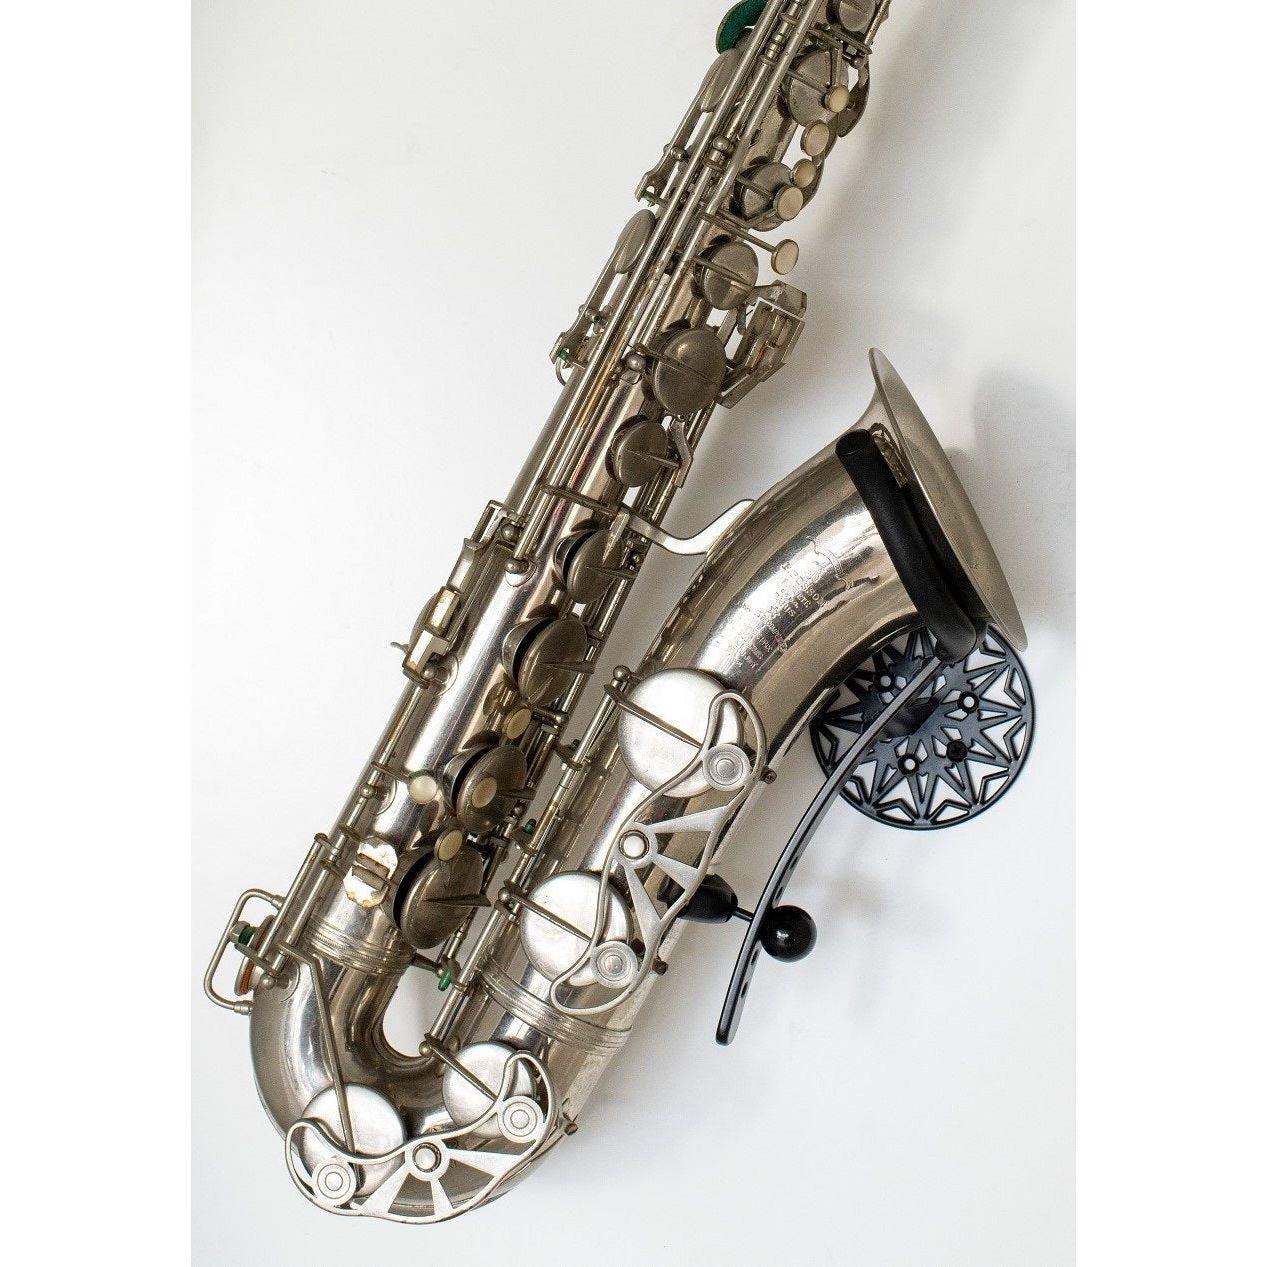 silver tenor sax in Samba Black wallmount by Locoparasaxo.com